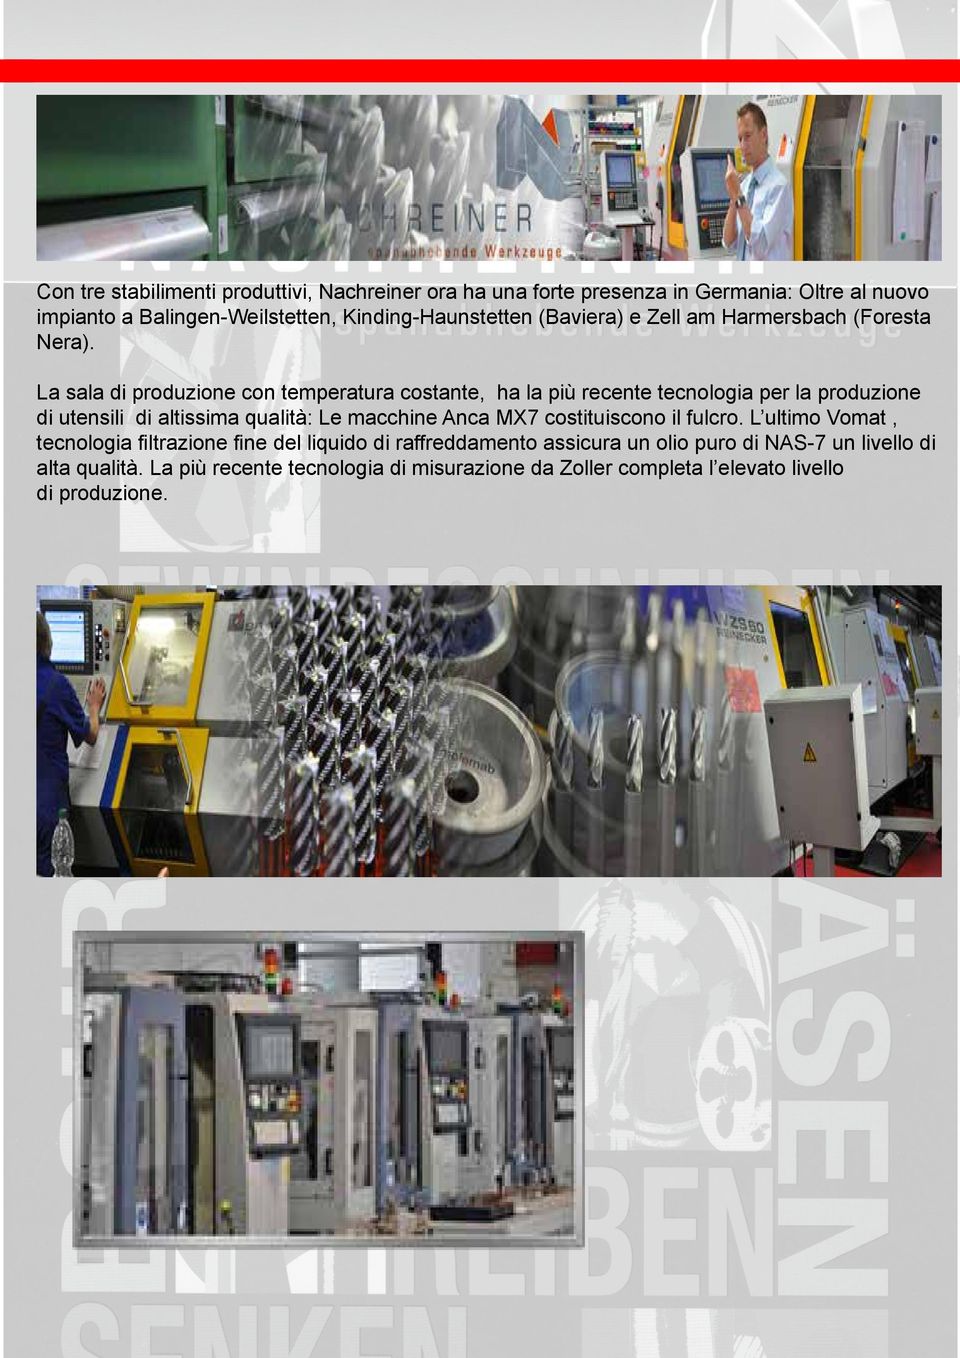 La sala di produzione con temperatura costante, ha la più recente tecnologia per la produzione di utensili di altissima qualità: Le macchine Anca MX7